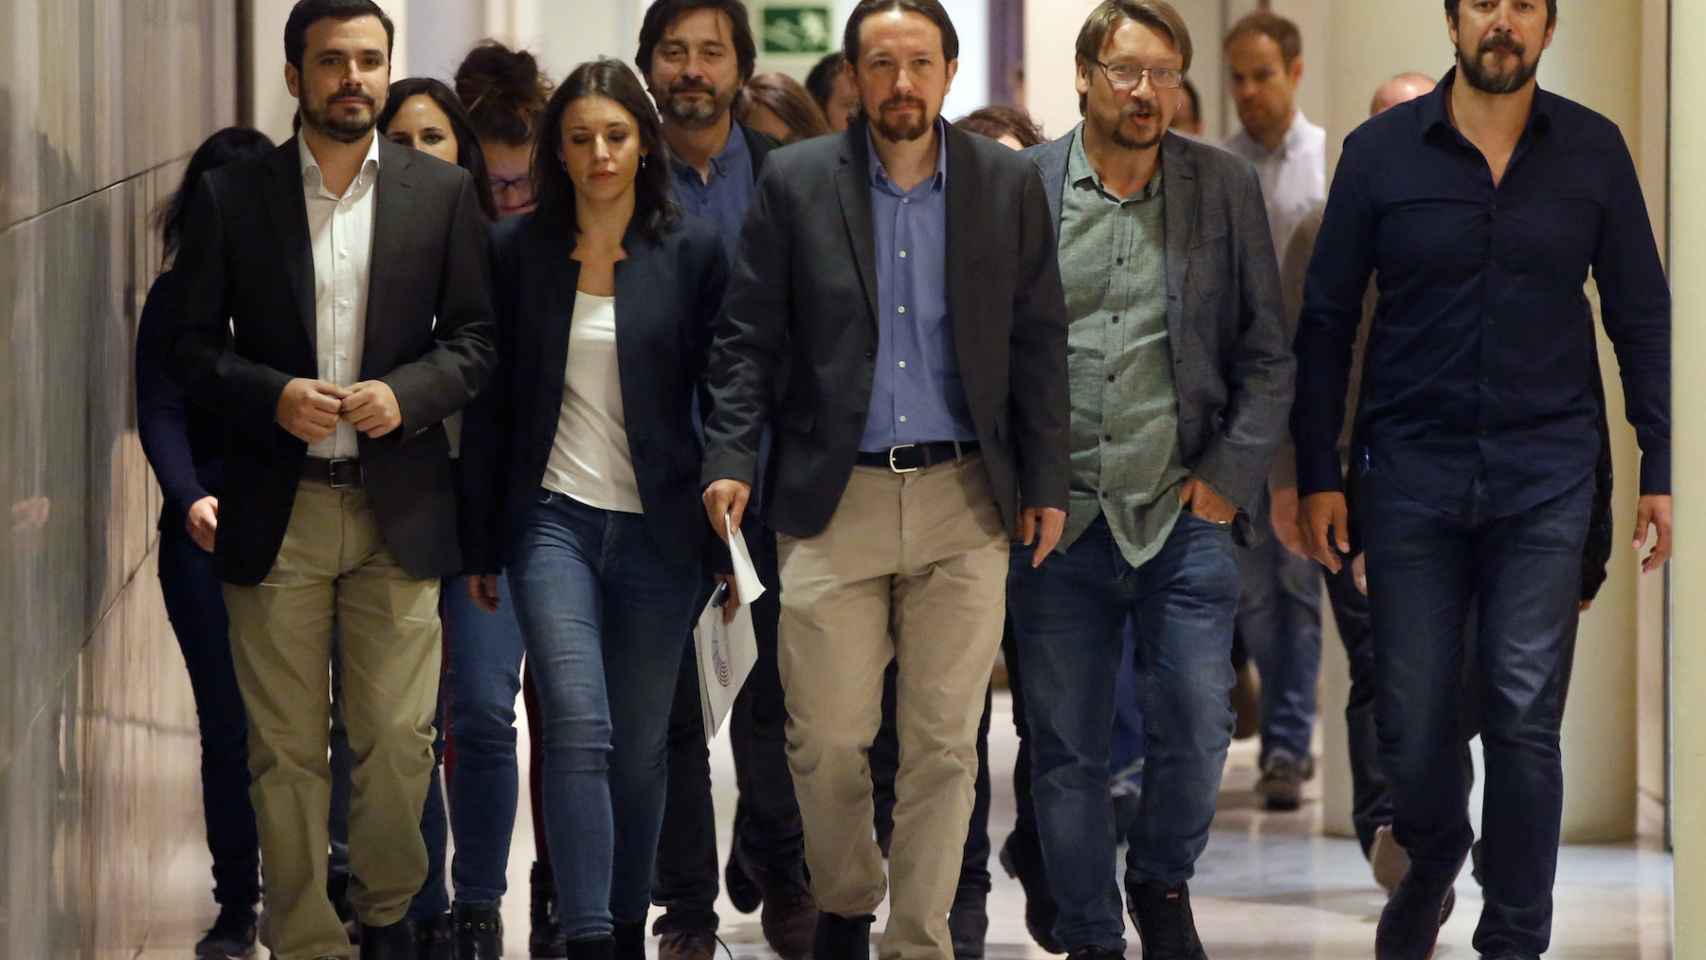 Pablo Iglesias y su equipo, llegando a la sala de prensa del Congreso.